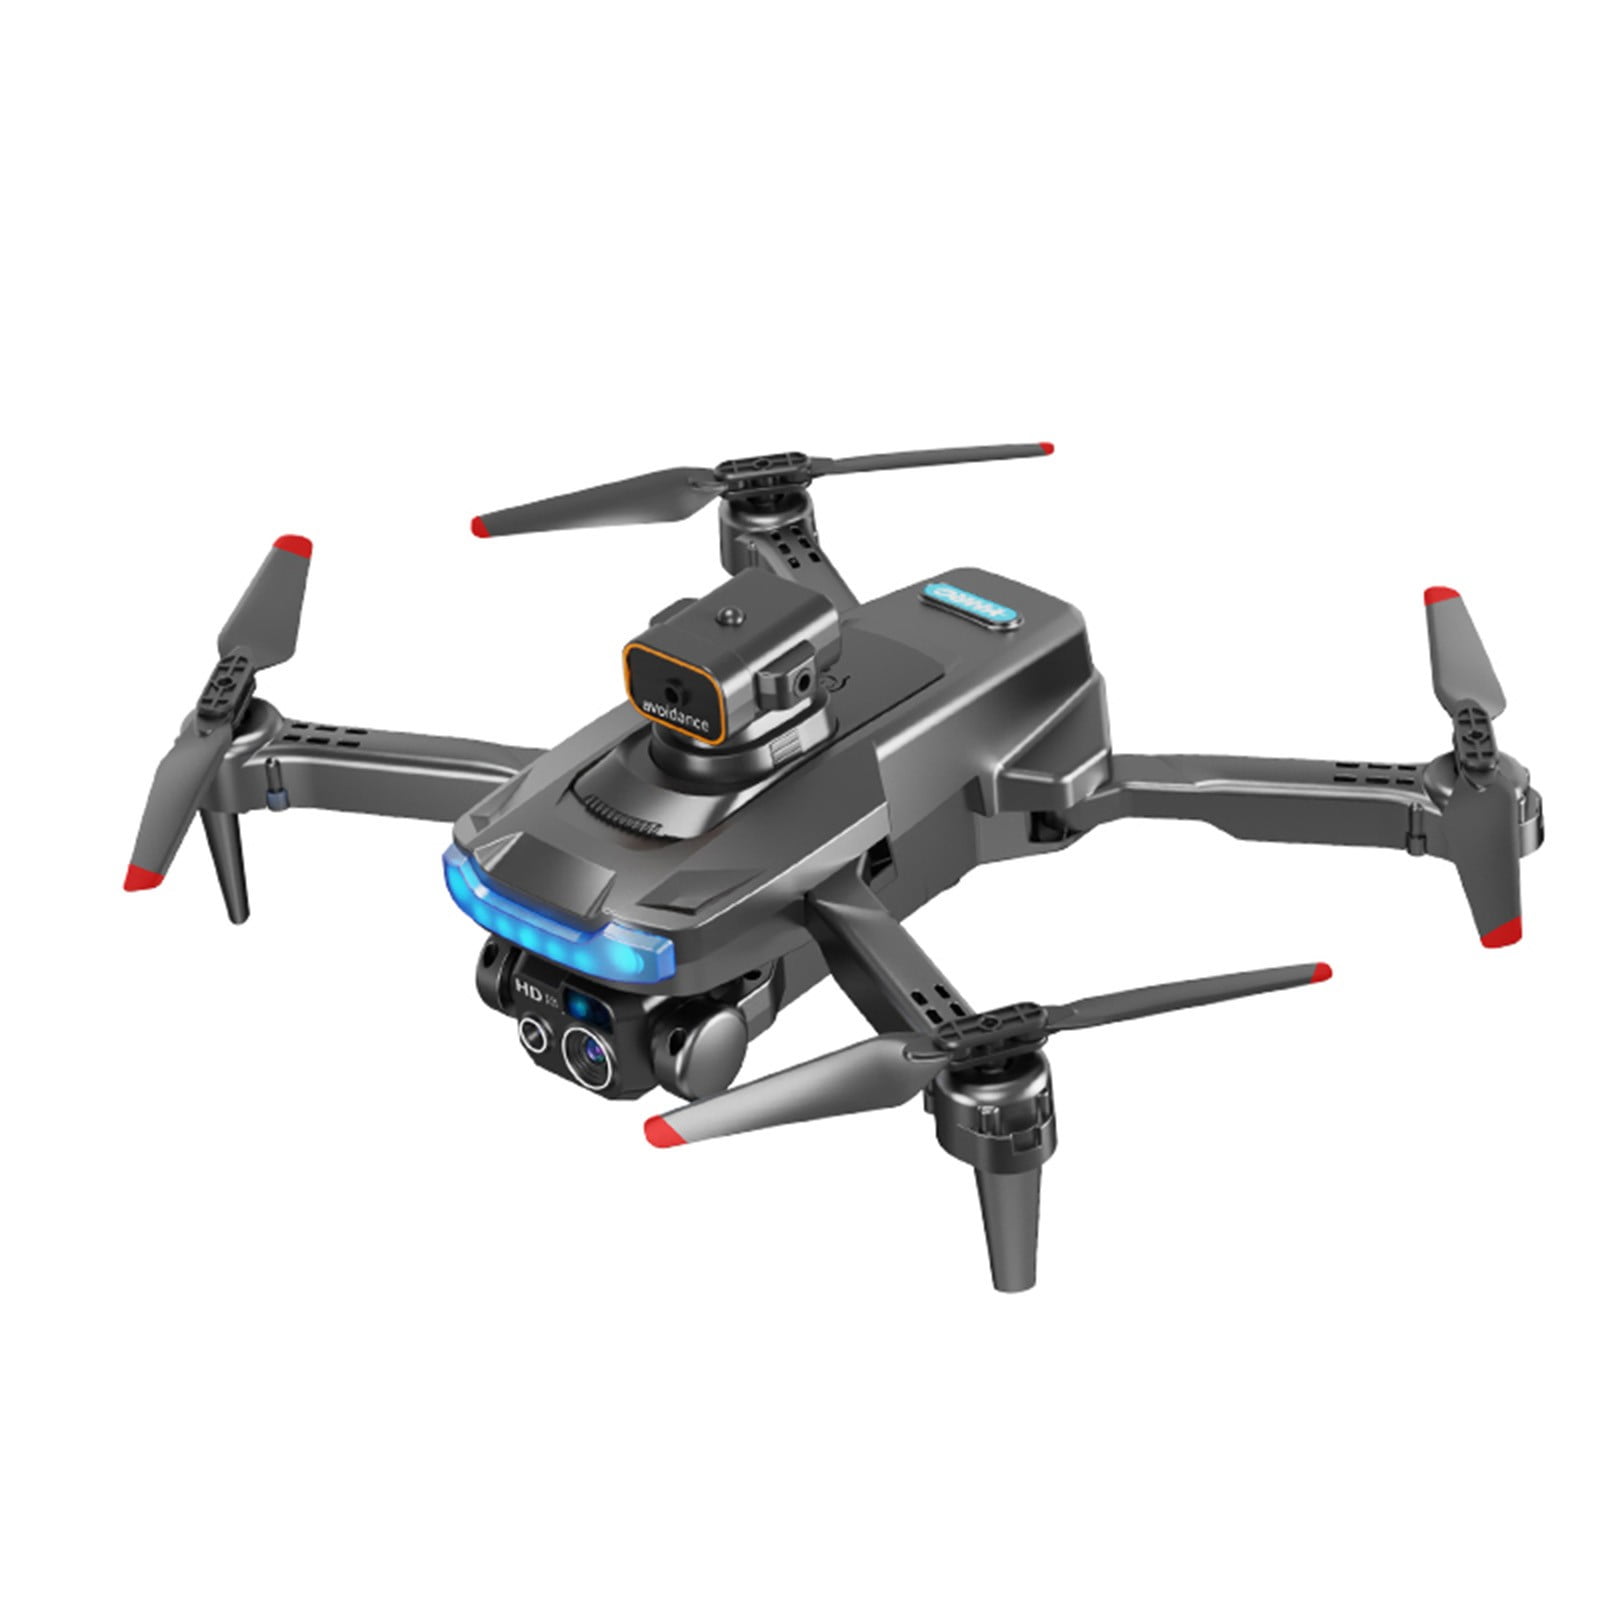 V3 Rc Drone 4k Profesional HD Cámara dual Fpv Drones con infrarrojos  Evitación de obstáculos Rc Helicóptero Quadcopter Wmkox8yii shdjk2804